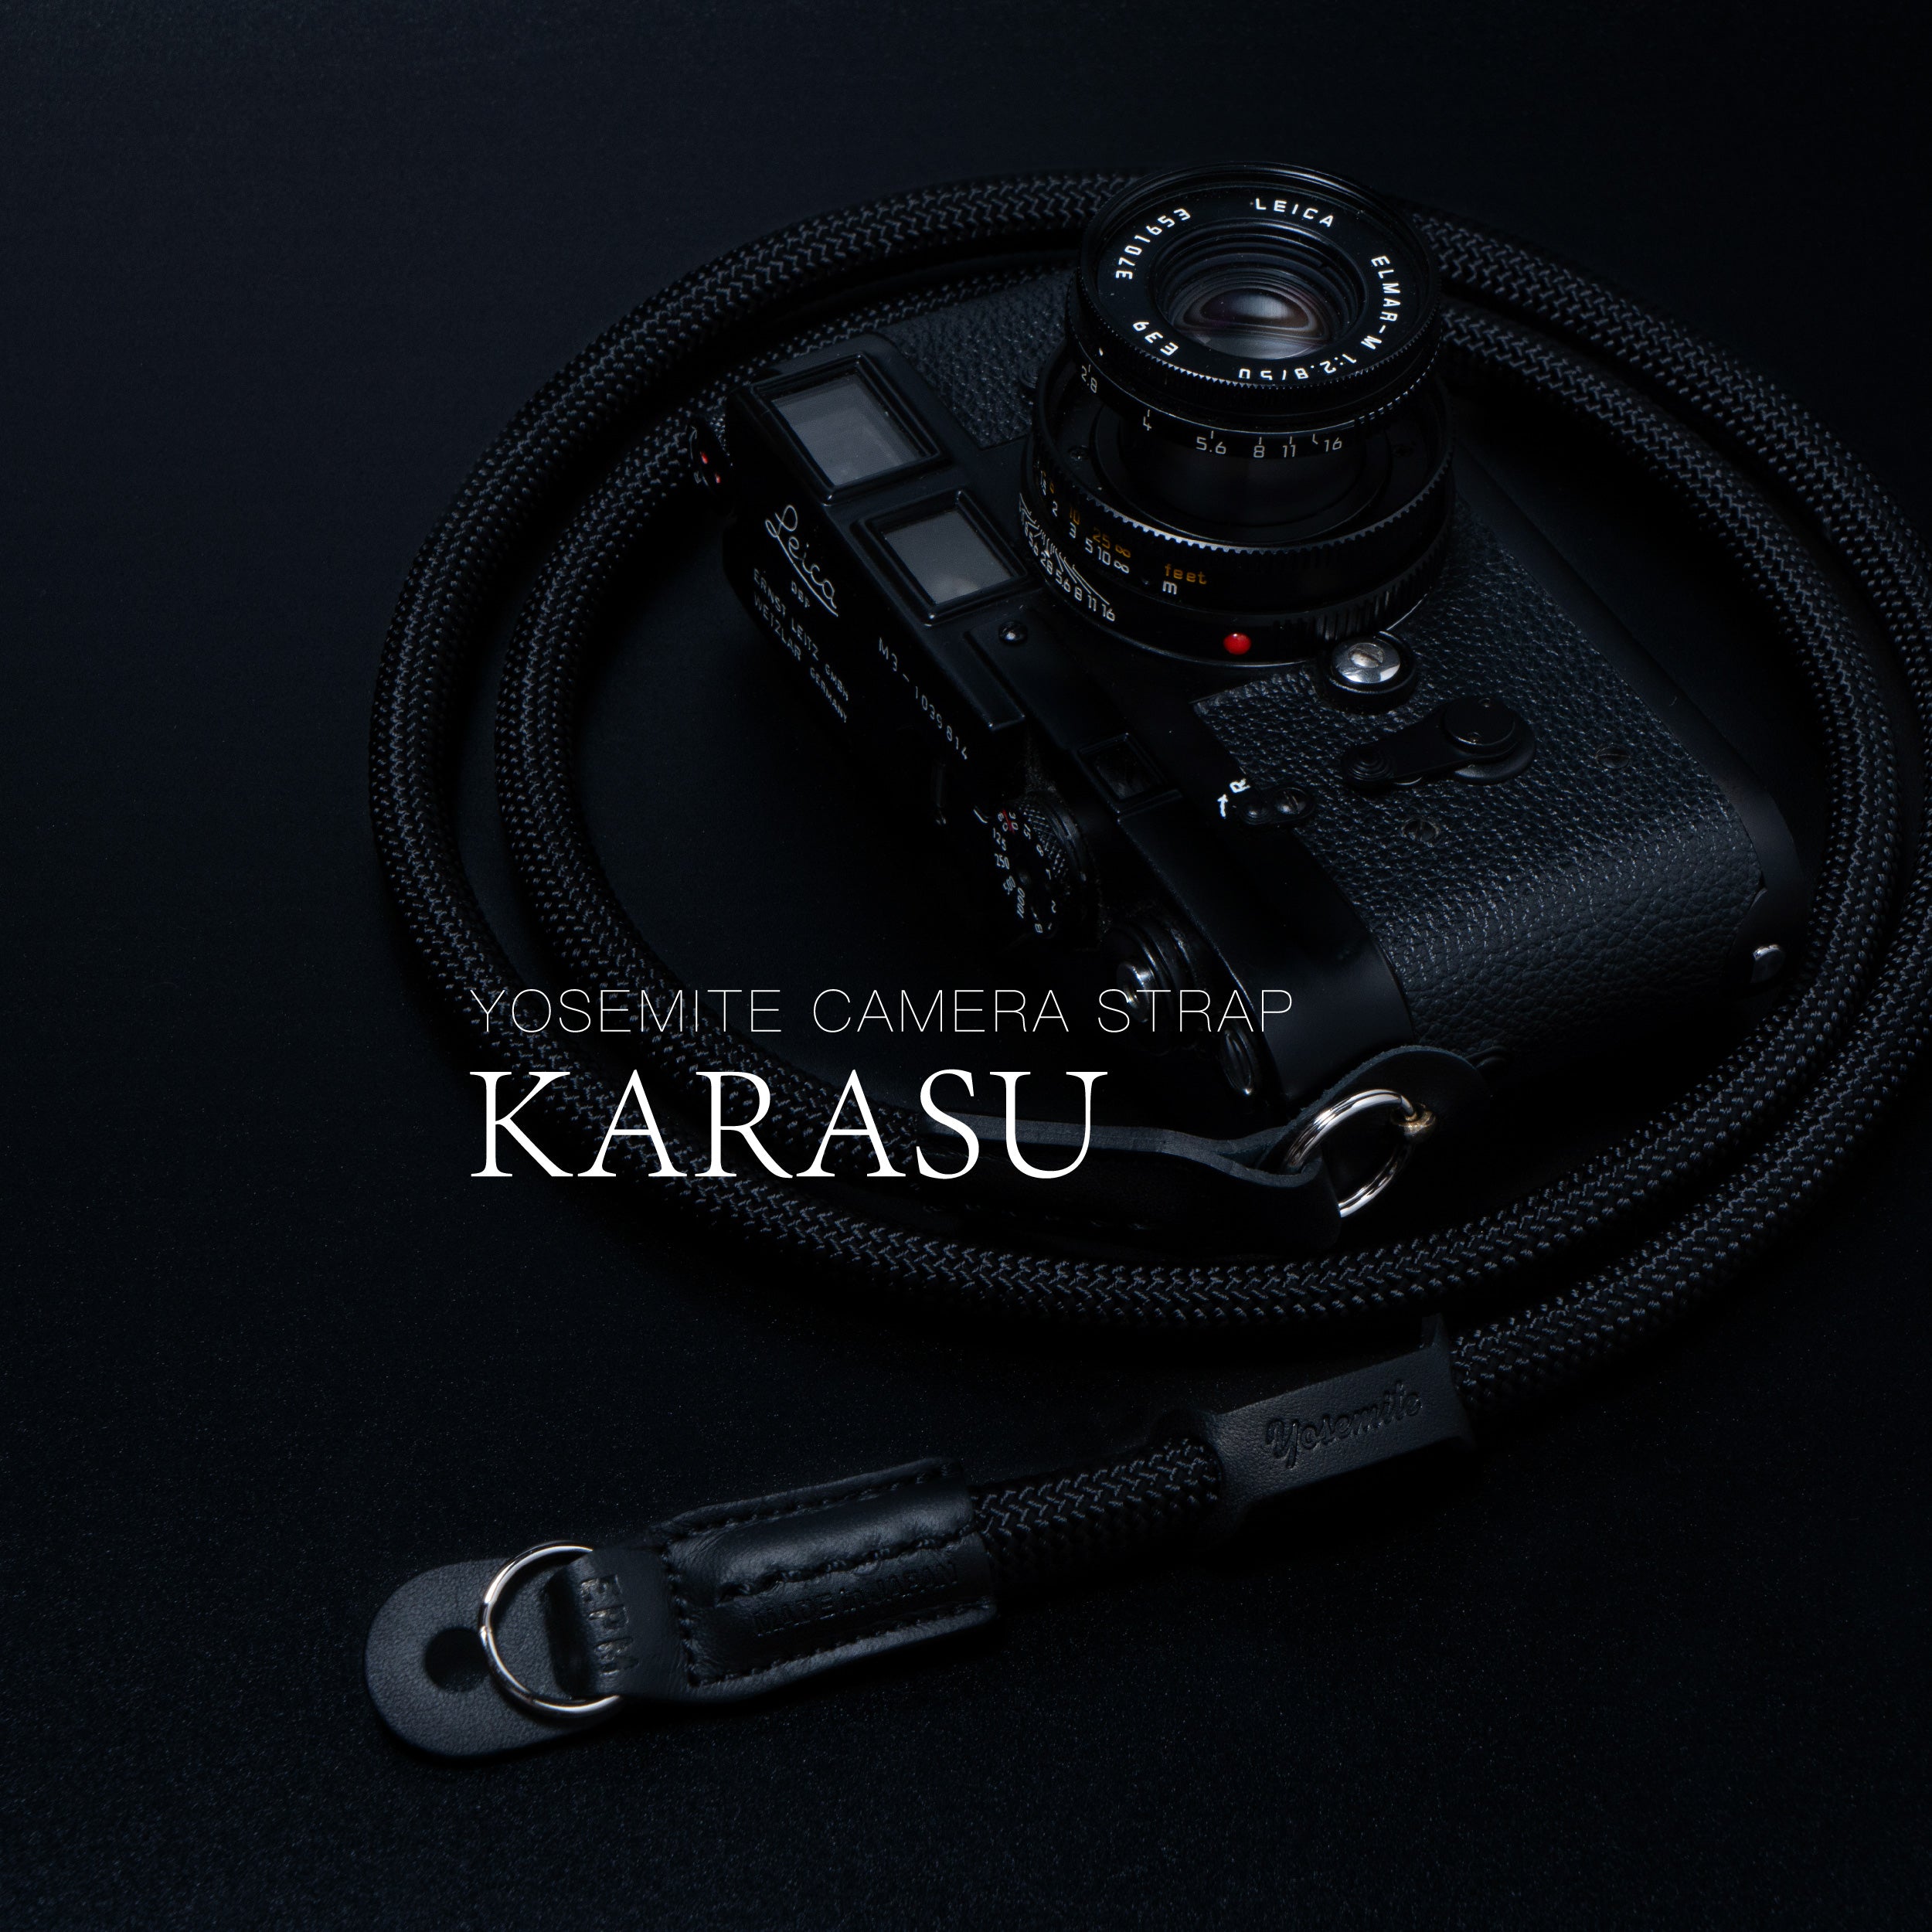 カメラストラップシリーズに『KARASU』が販売開始！ – 株式会社 smokey 